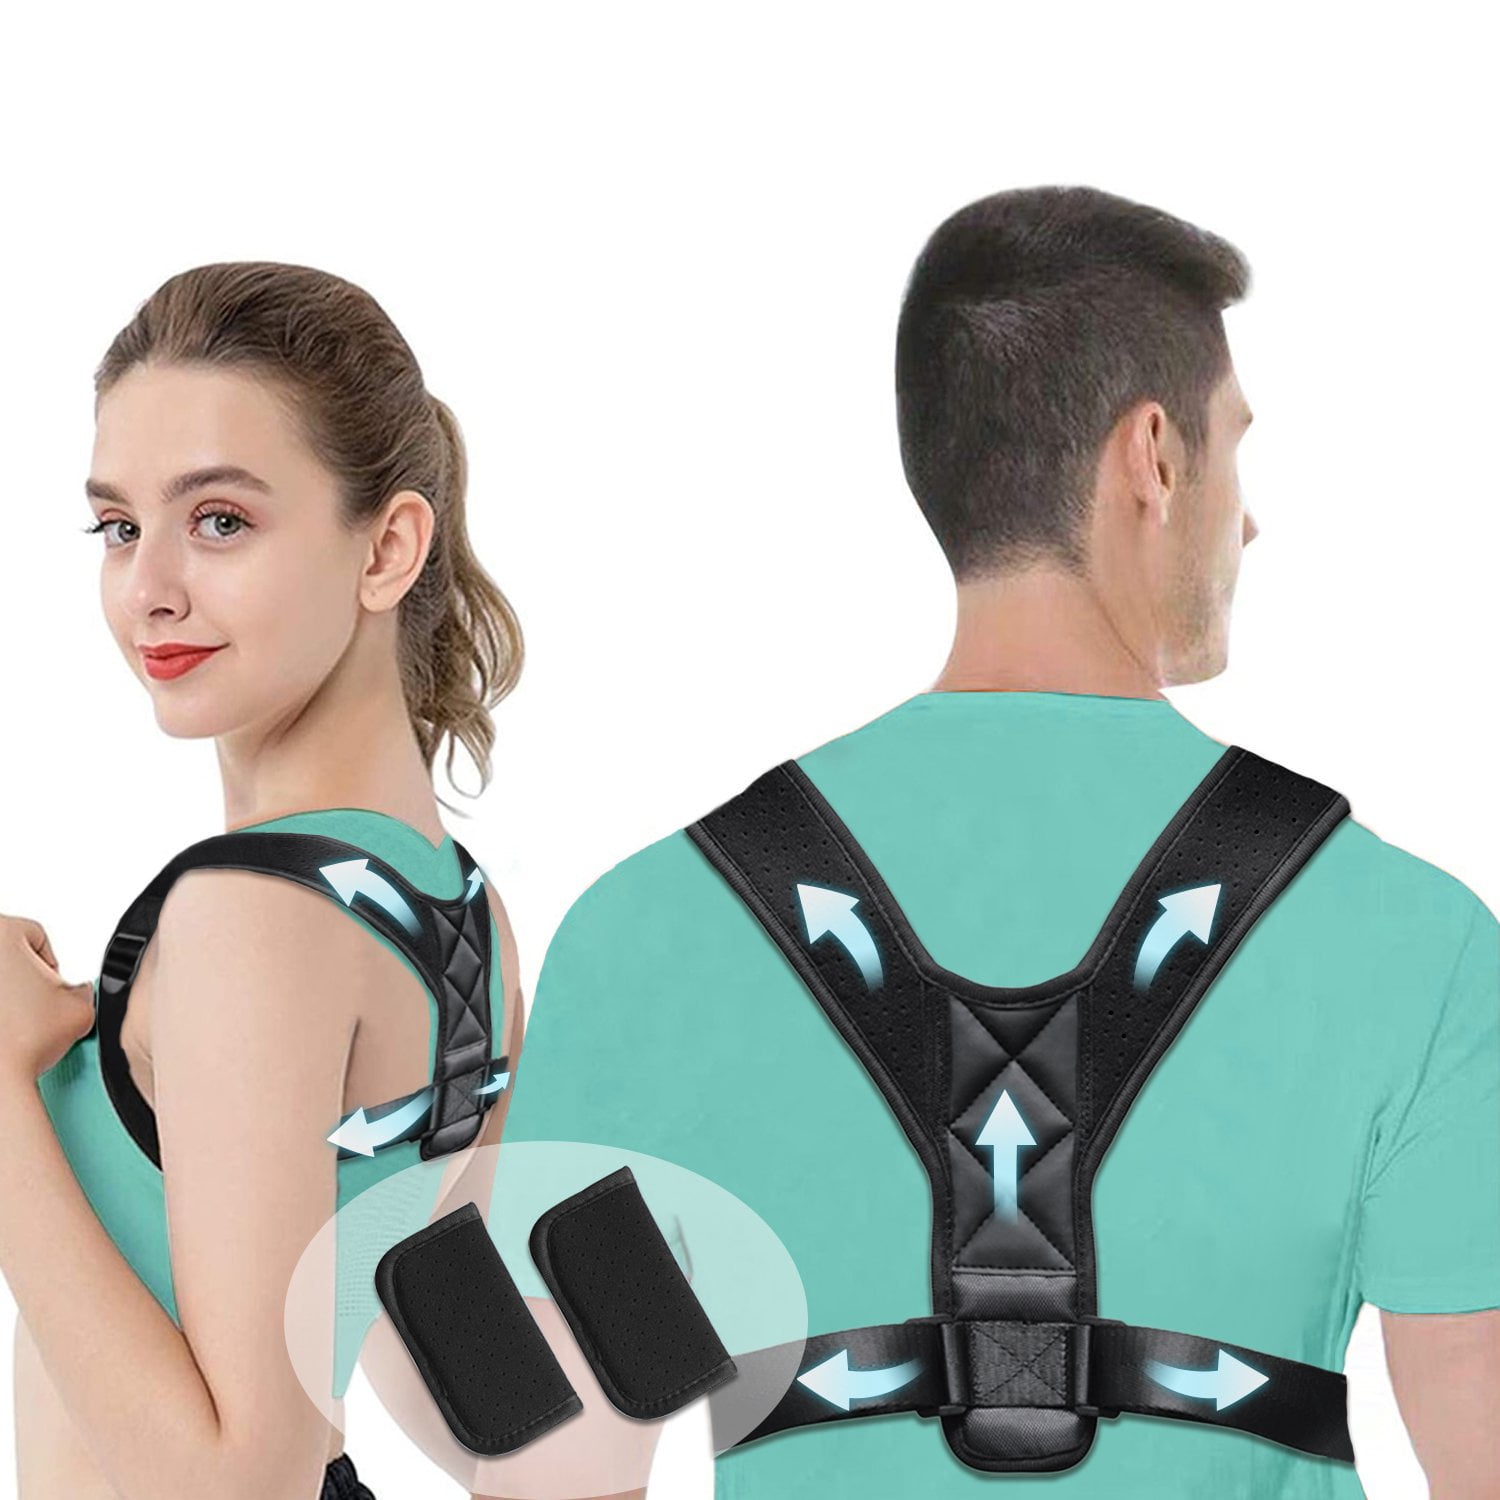 Adjustable Brace Support Belt Back Posture Corrector Clavicle